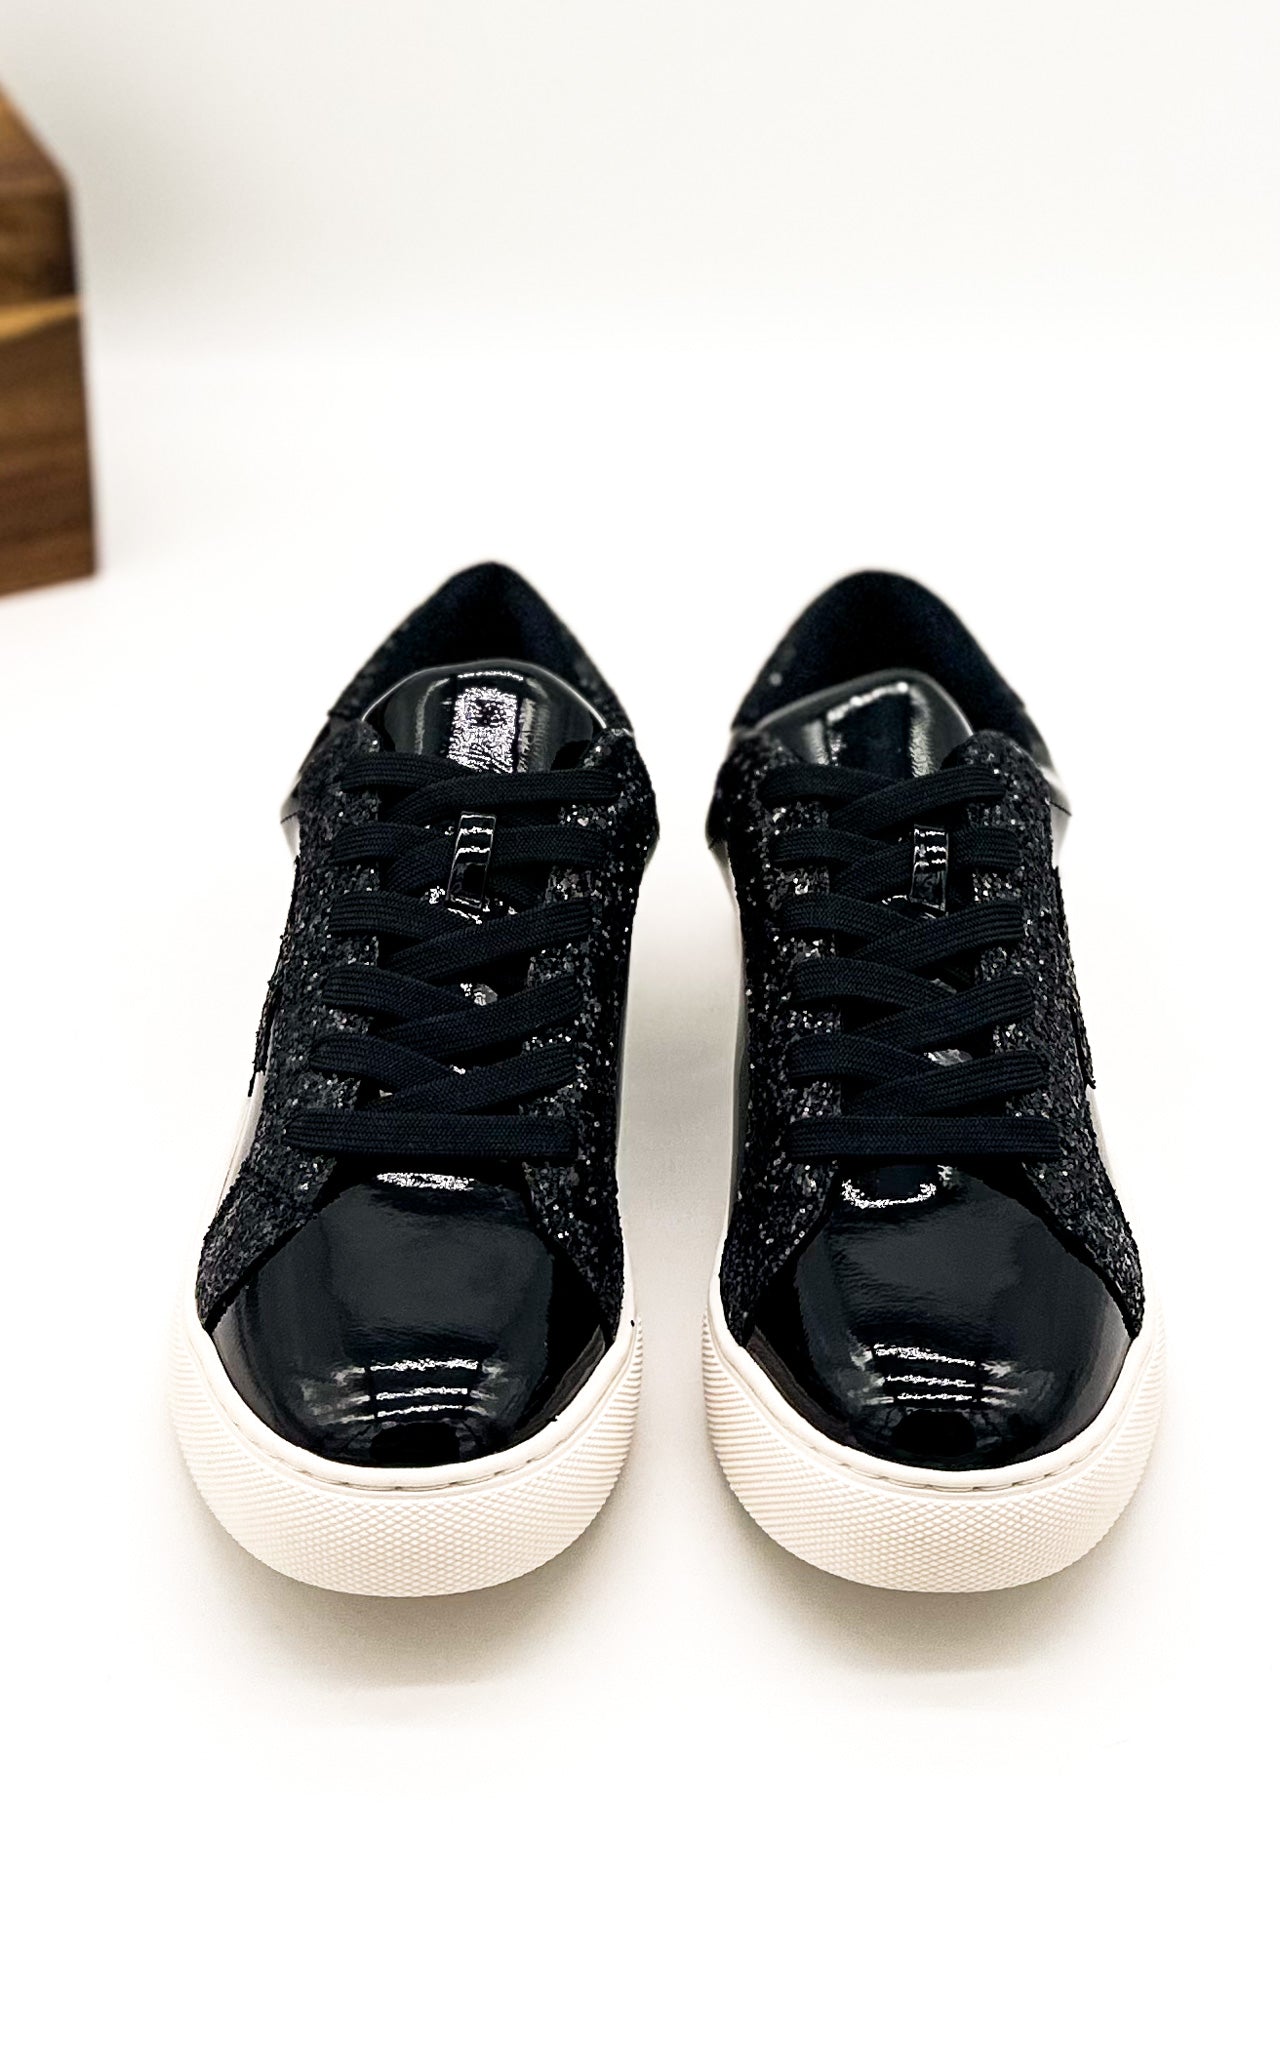 Corkys Supernova Sneaker in Black Patent